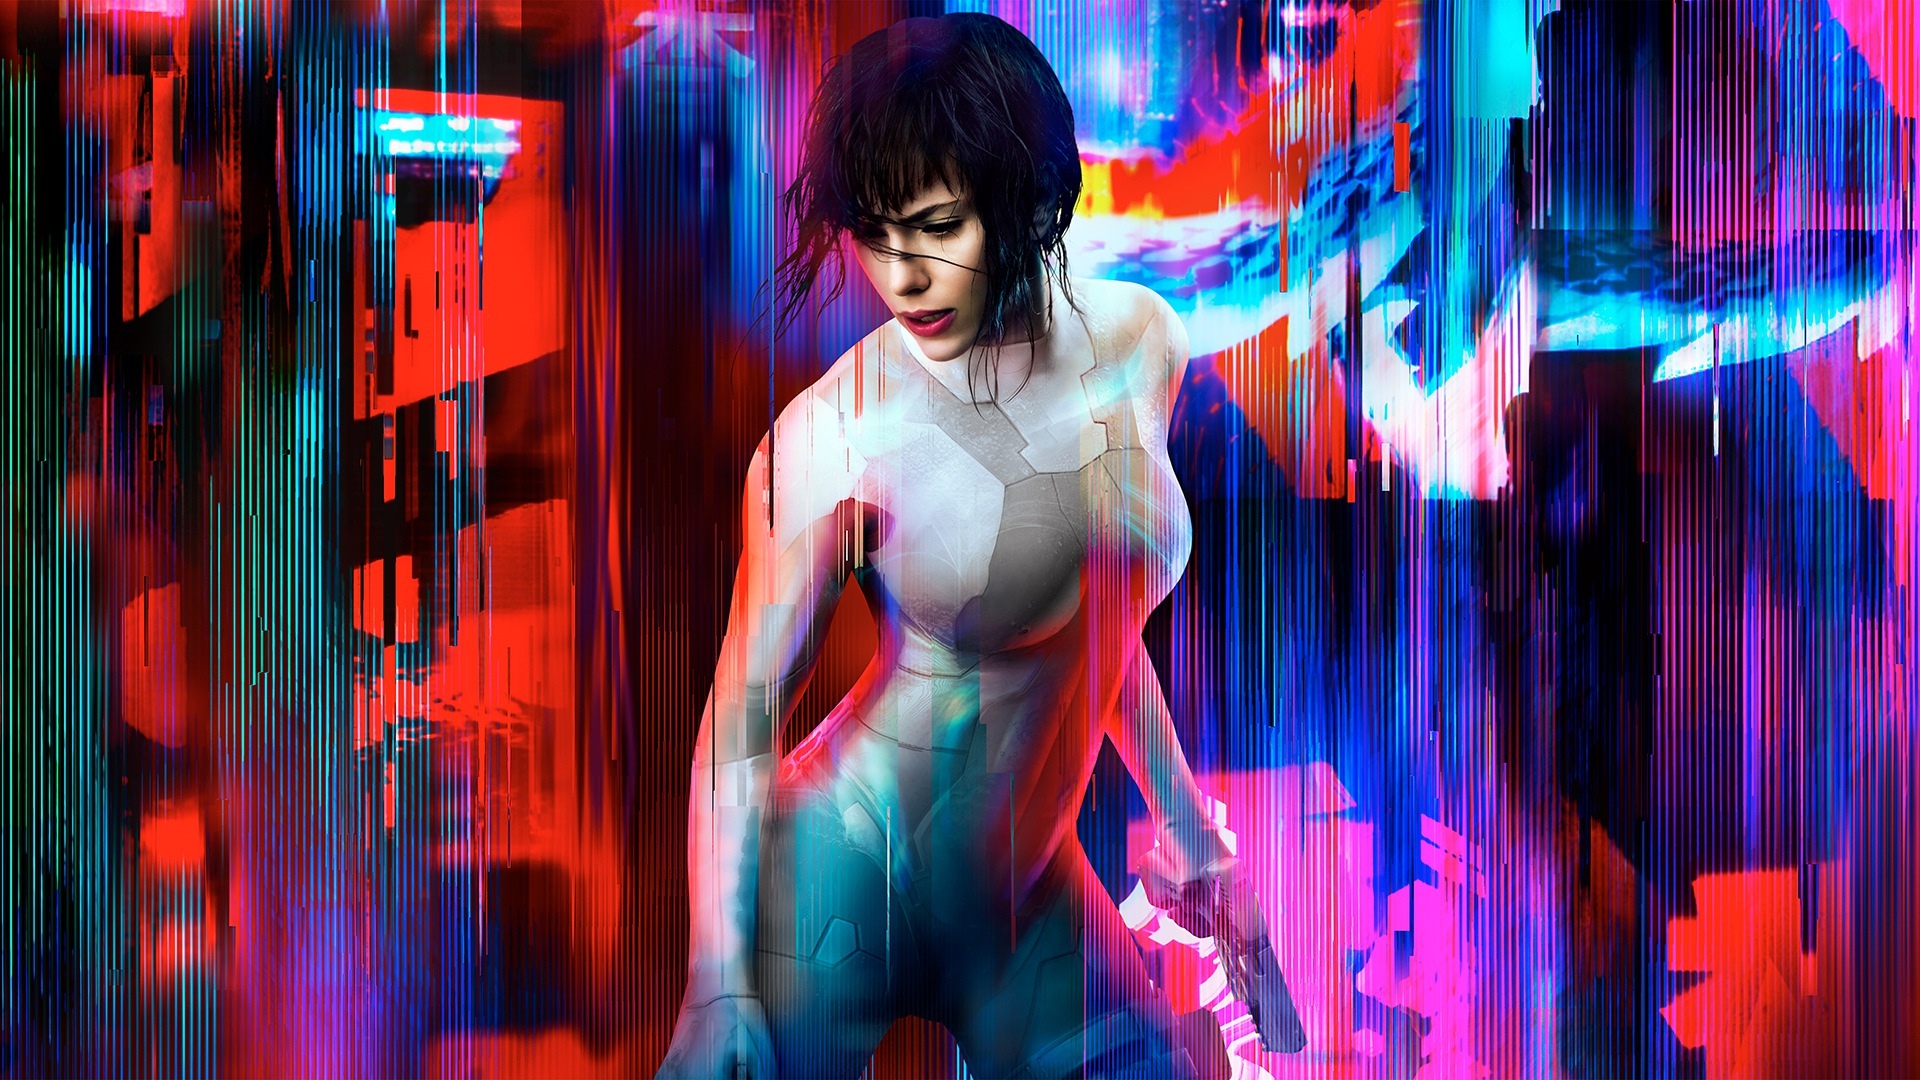 Cyberpunk woman wallpaper фото 96